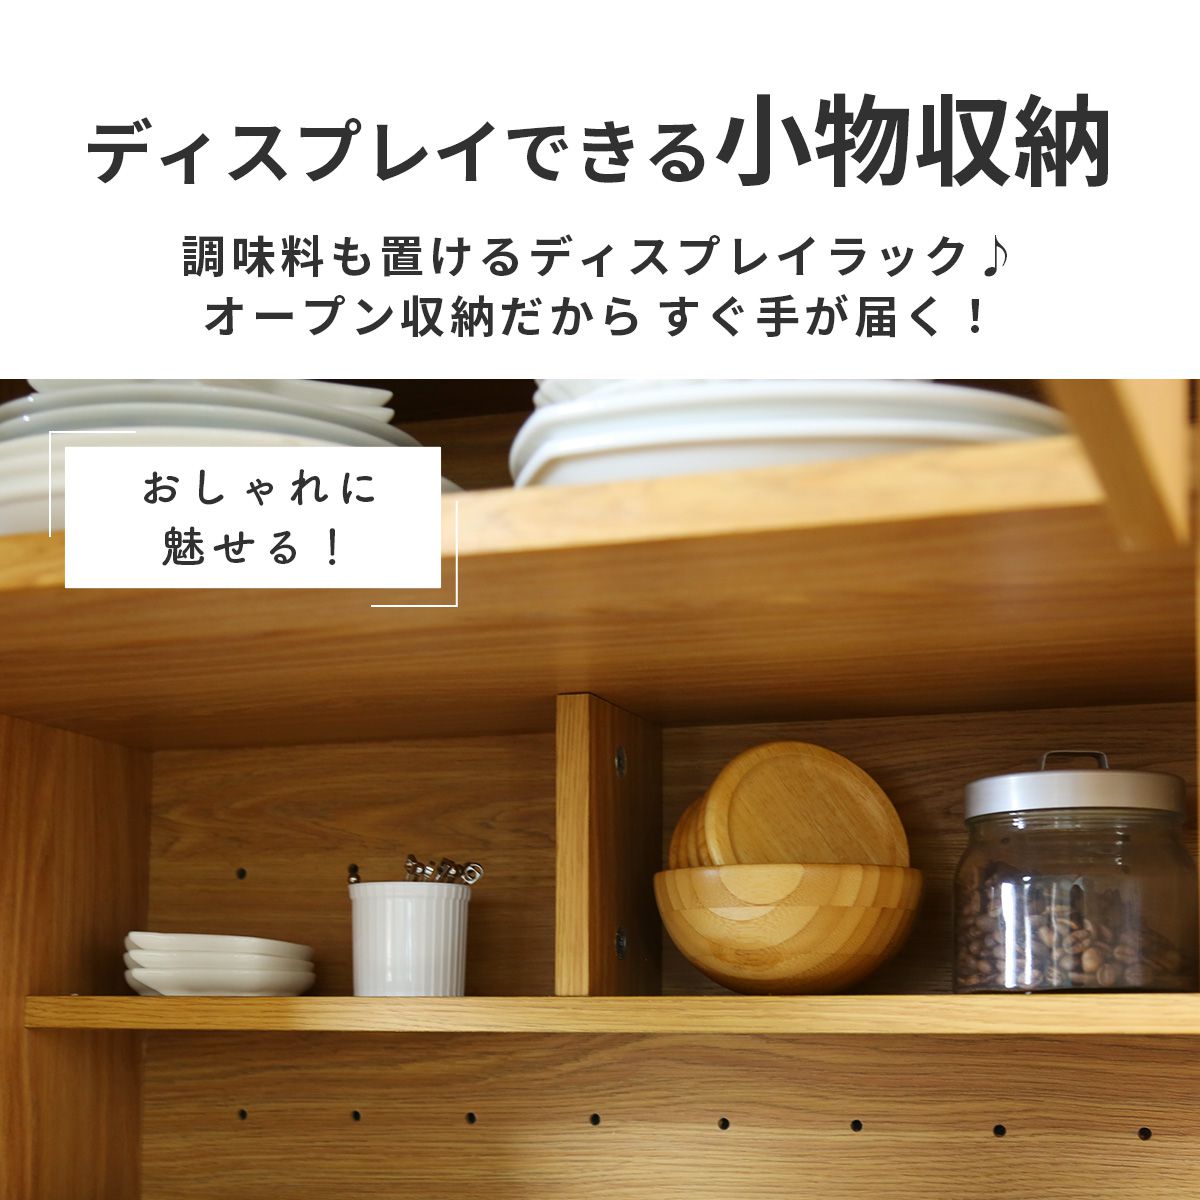 15872円 最新のデザイン kuroshio カトレア食器棚60-180 23461 ホワイト W600×D380×H1800mm 家具 インテリア 収納用品 多目的収納 多目的木製棚 食器棚